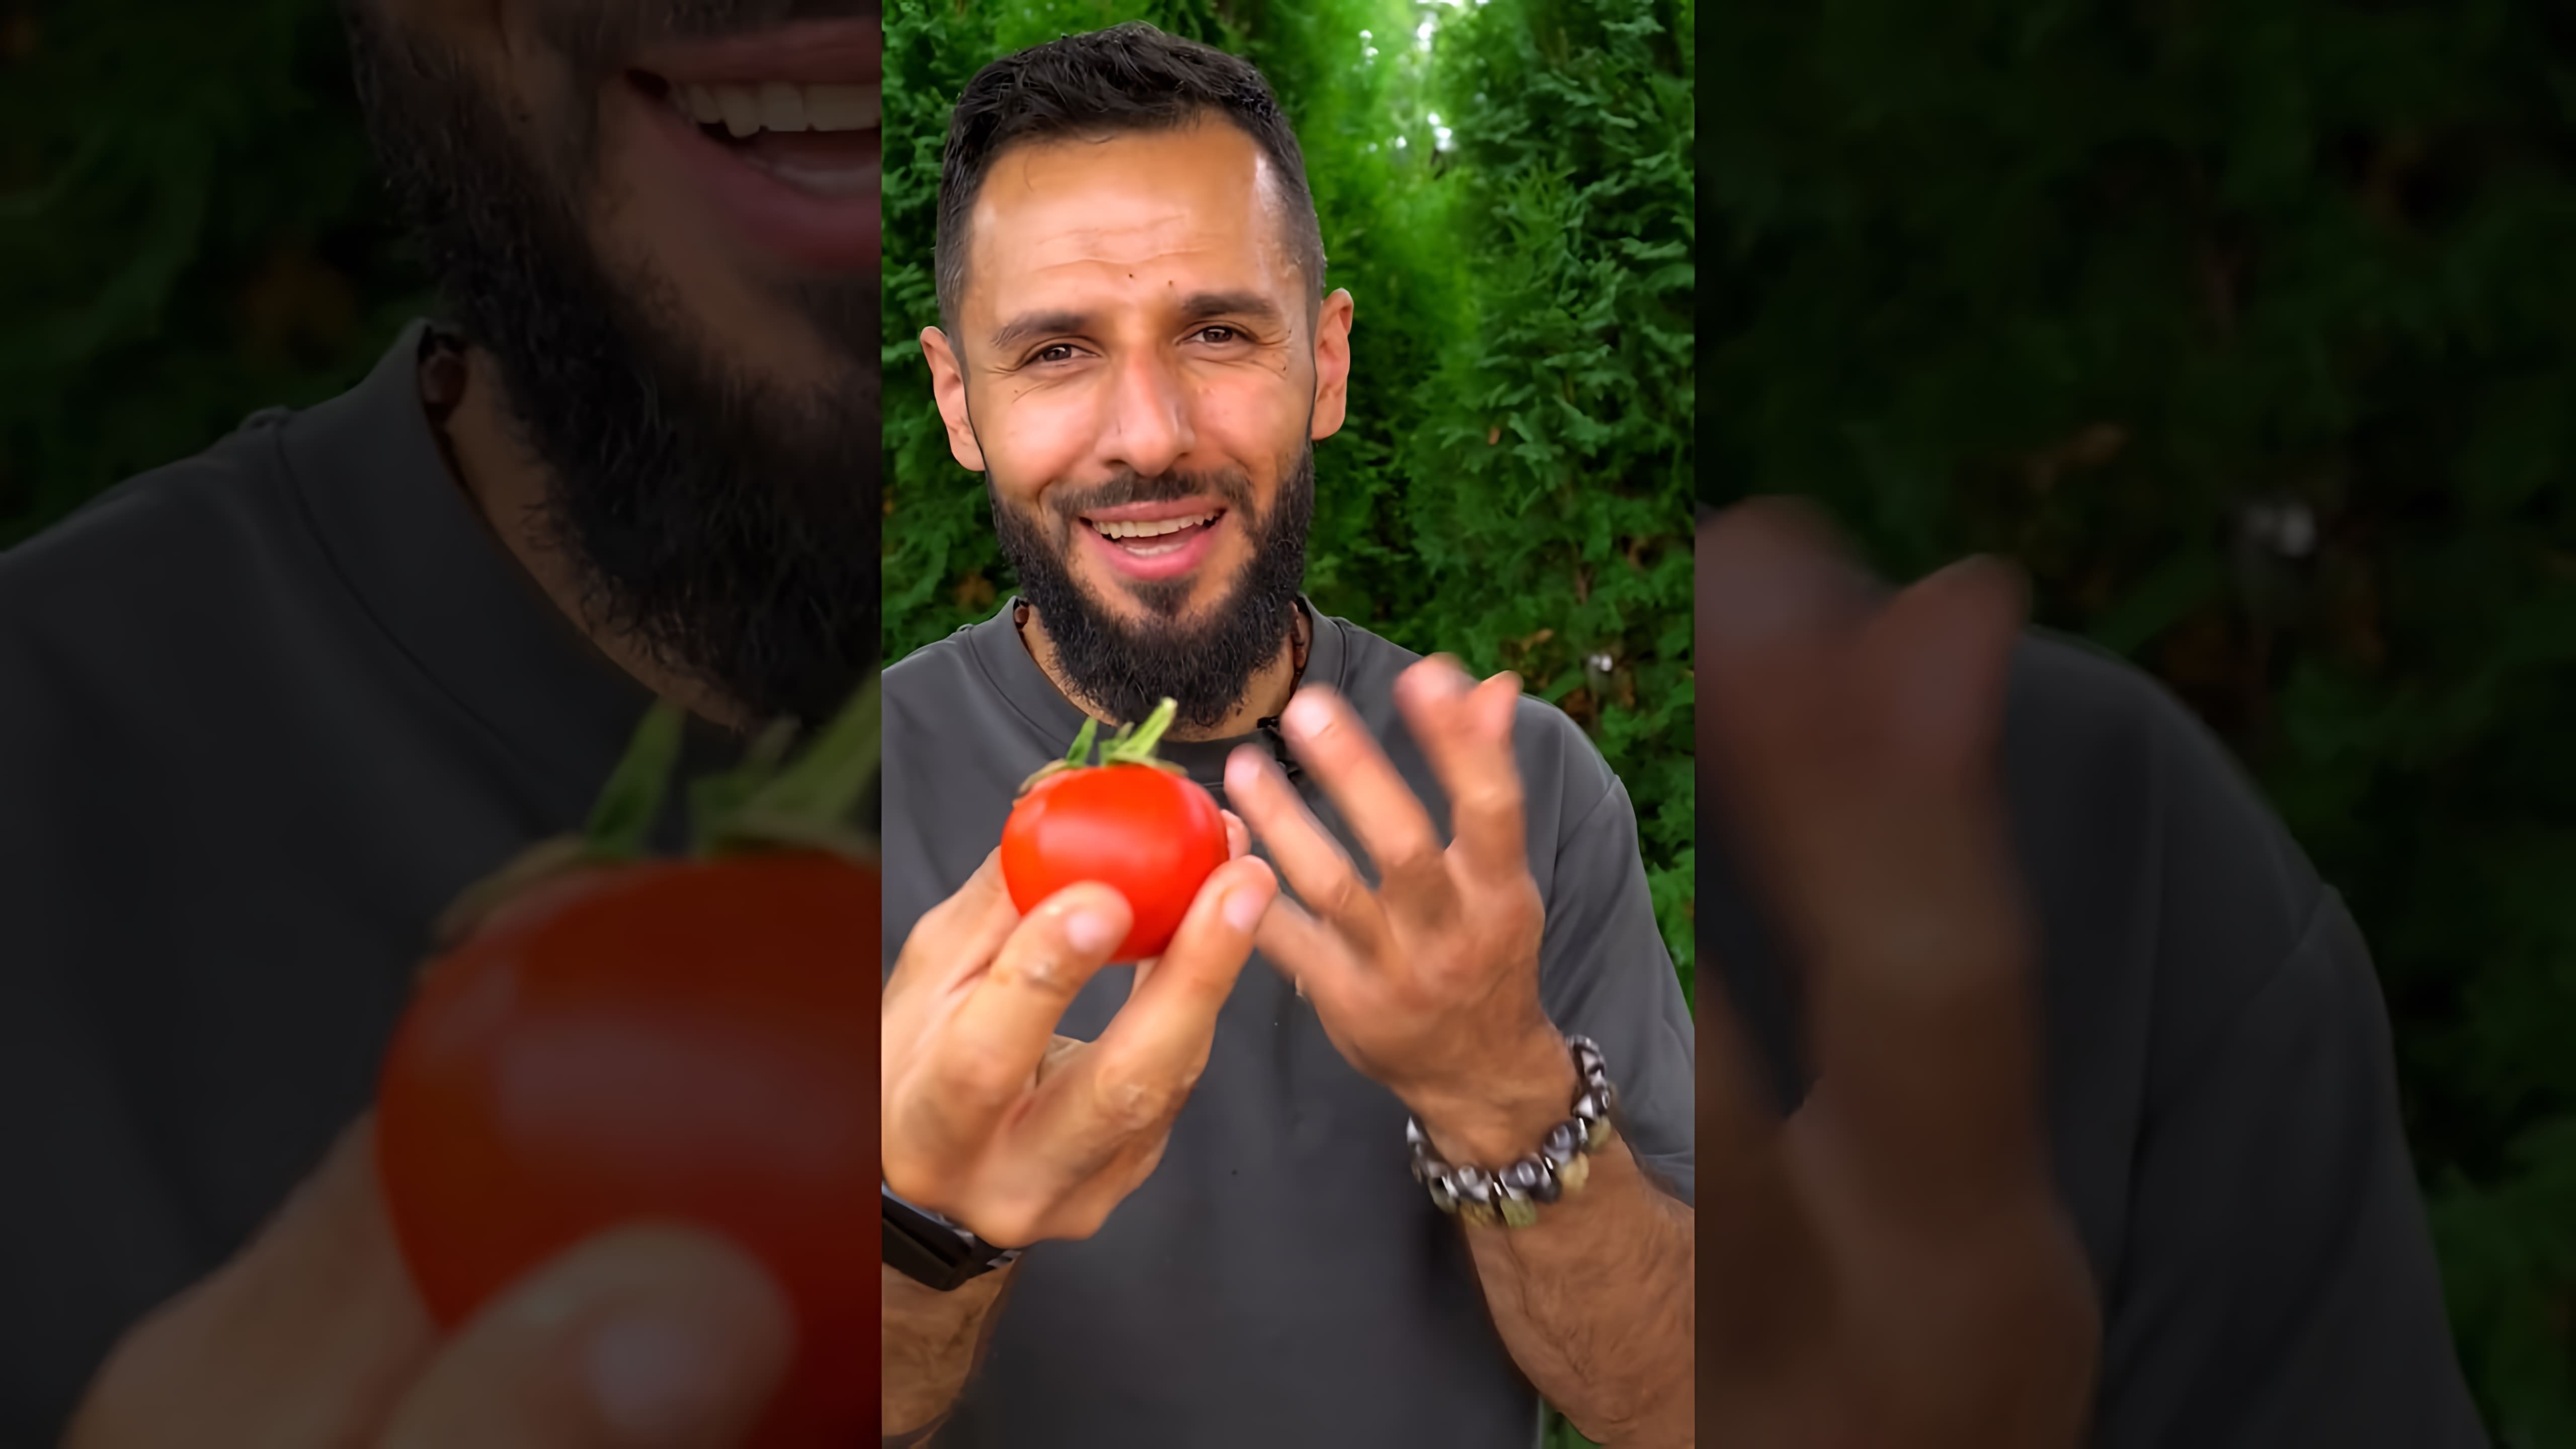 В этом видео демонстрируется процесс приготовления популярного томатного соуса грузинской кухни - сацебели